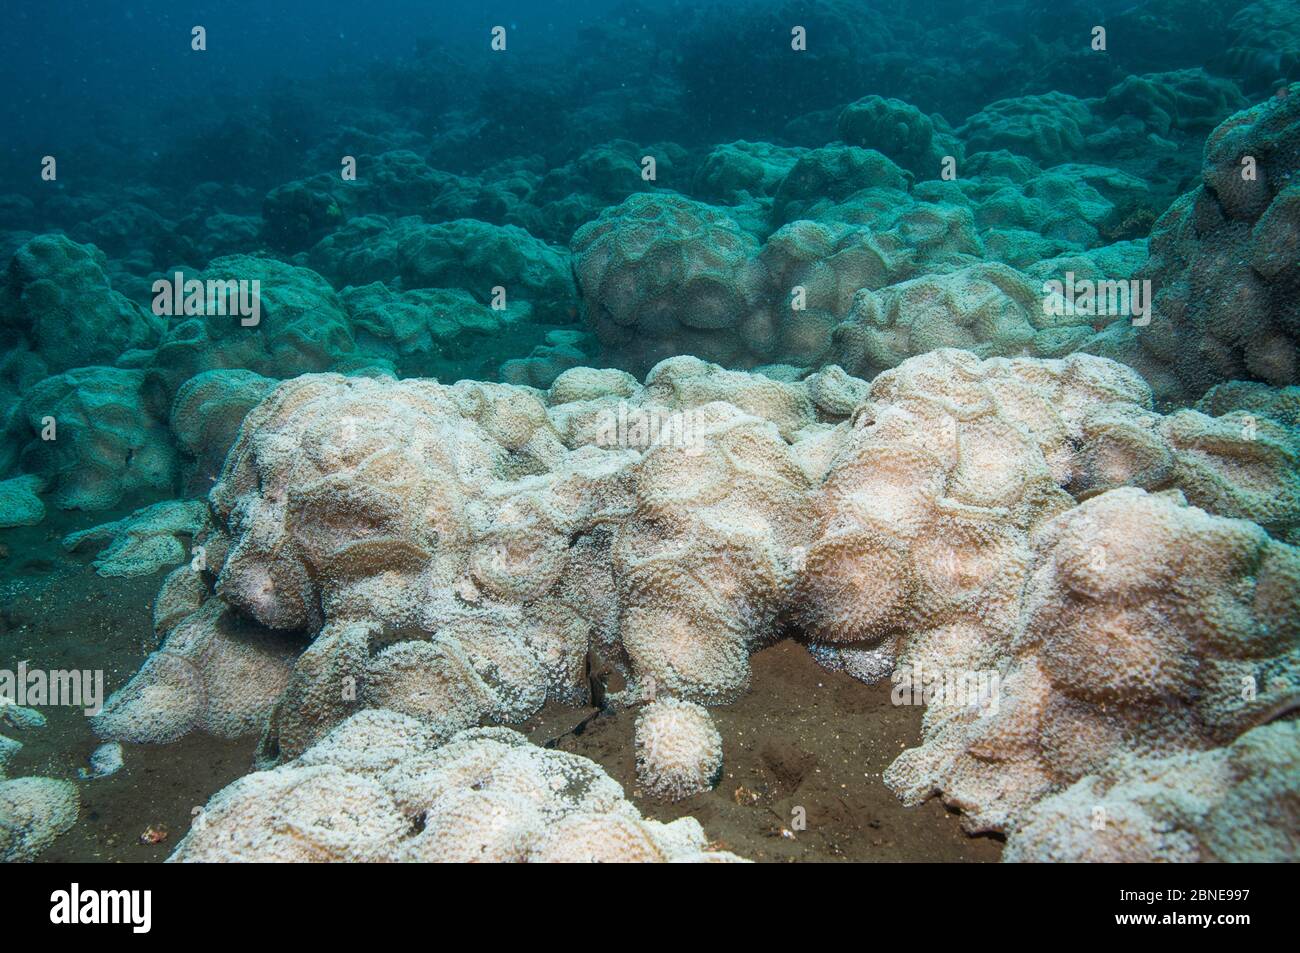 Dichte Aggregation von Corallimorphs (Discosoma rhodostoma), die fast den gesamten Riffhang bedeckt. Bali, Indonesien. Stockfoto